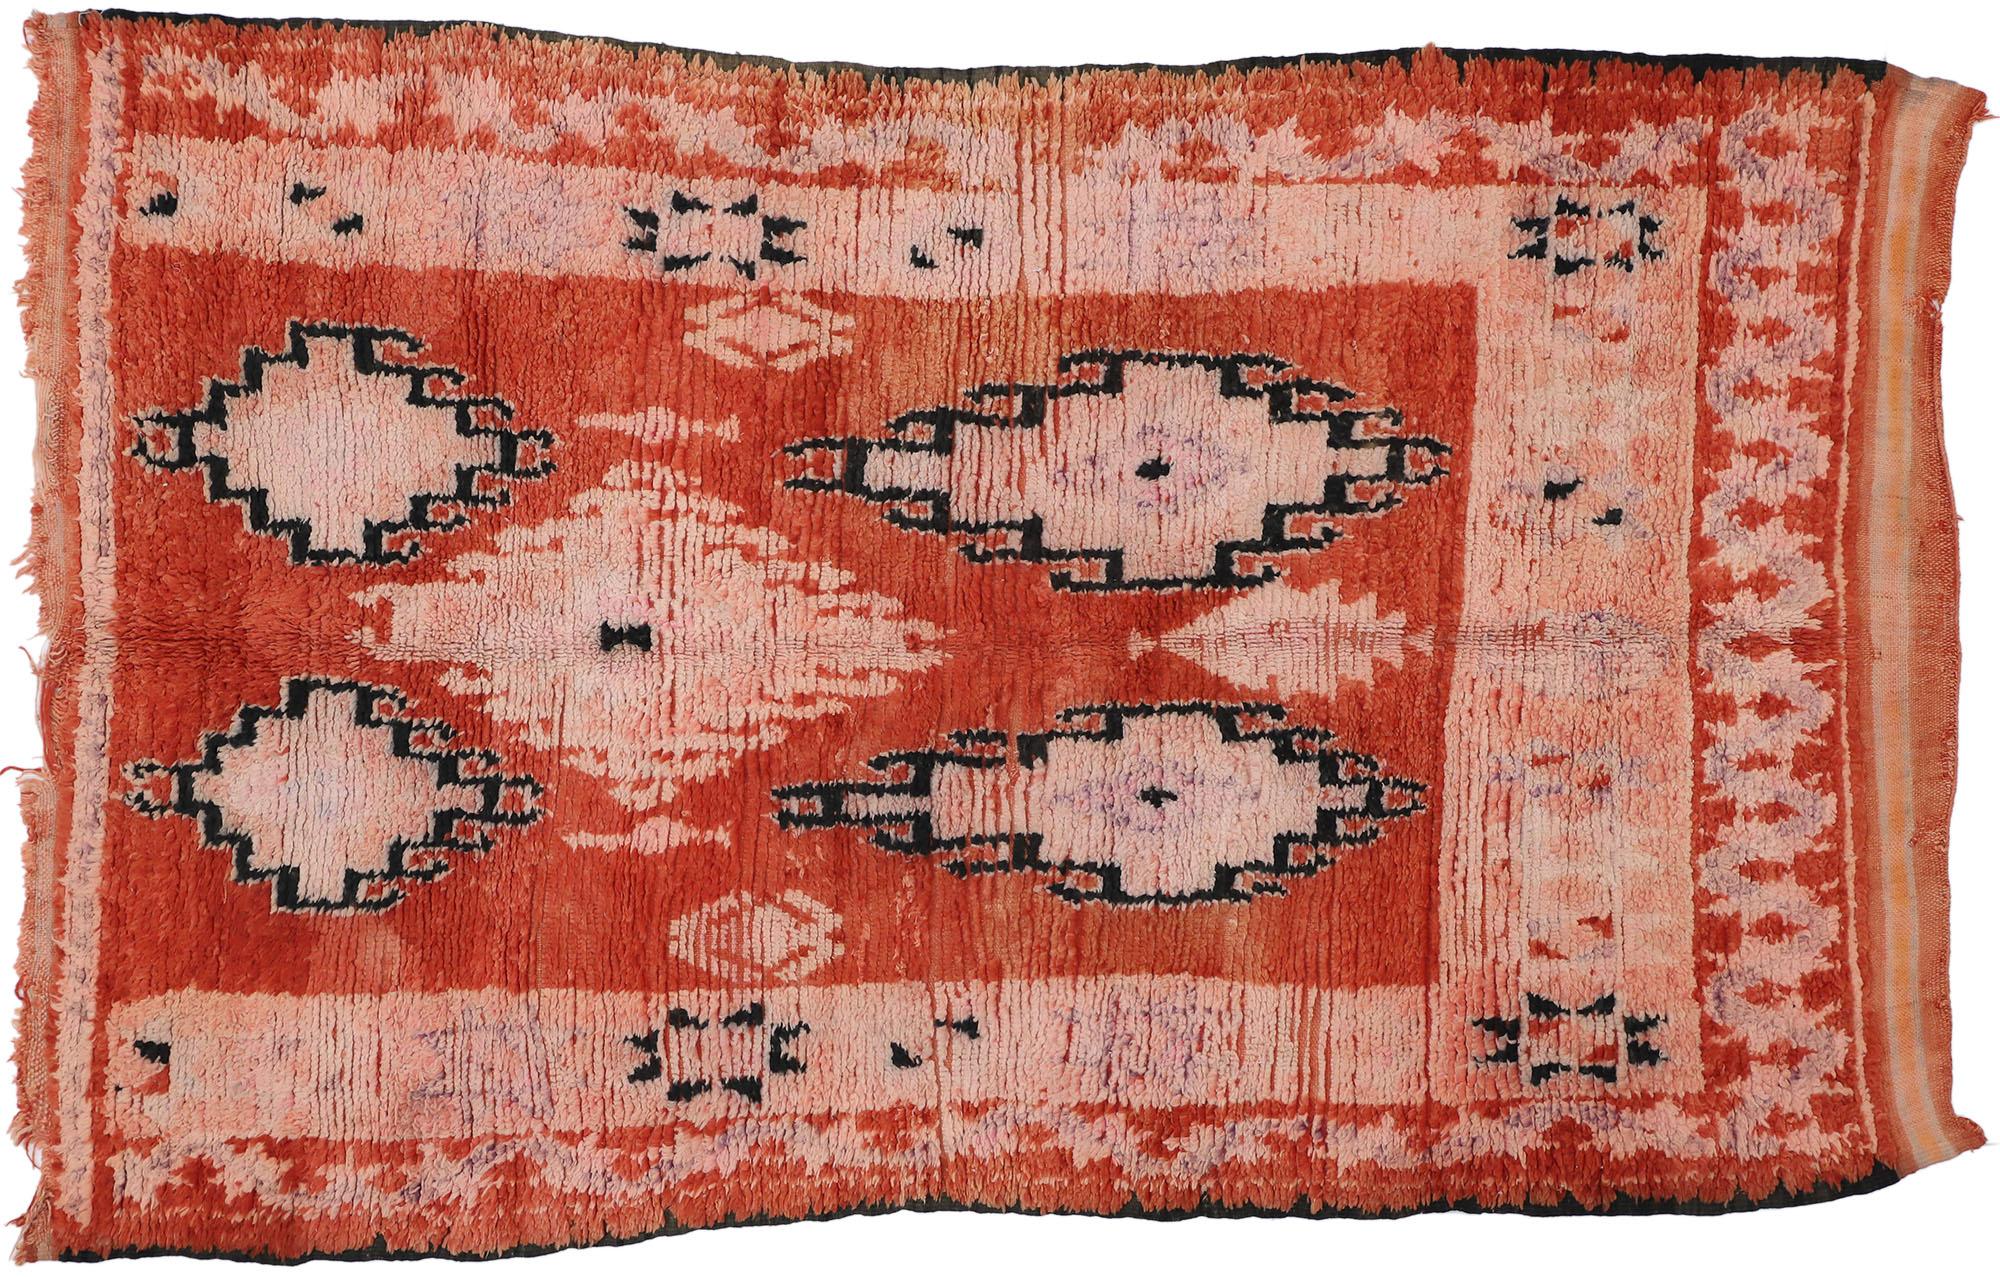 20777 Tapis marocain Vintage Boujad, 05'04 x 08'06. Les tapis Boujad, originaires de la région du Boujad au Maroc, sont d'étonnantes créations tissées à la main qui mettent en valeur les traditions artistiques vivantes des tribus berbères, notamment